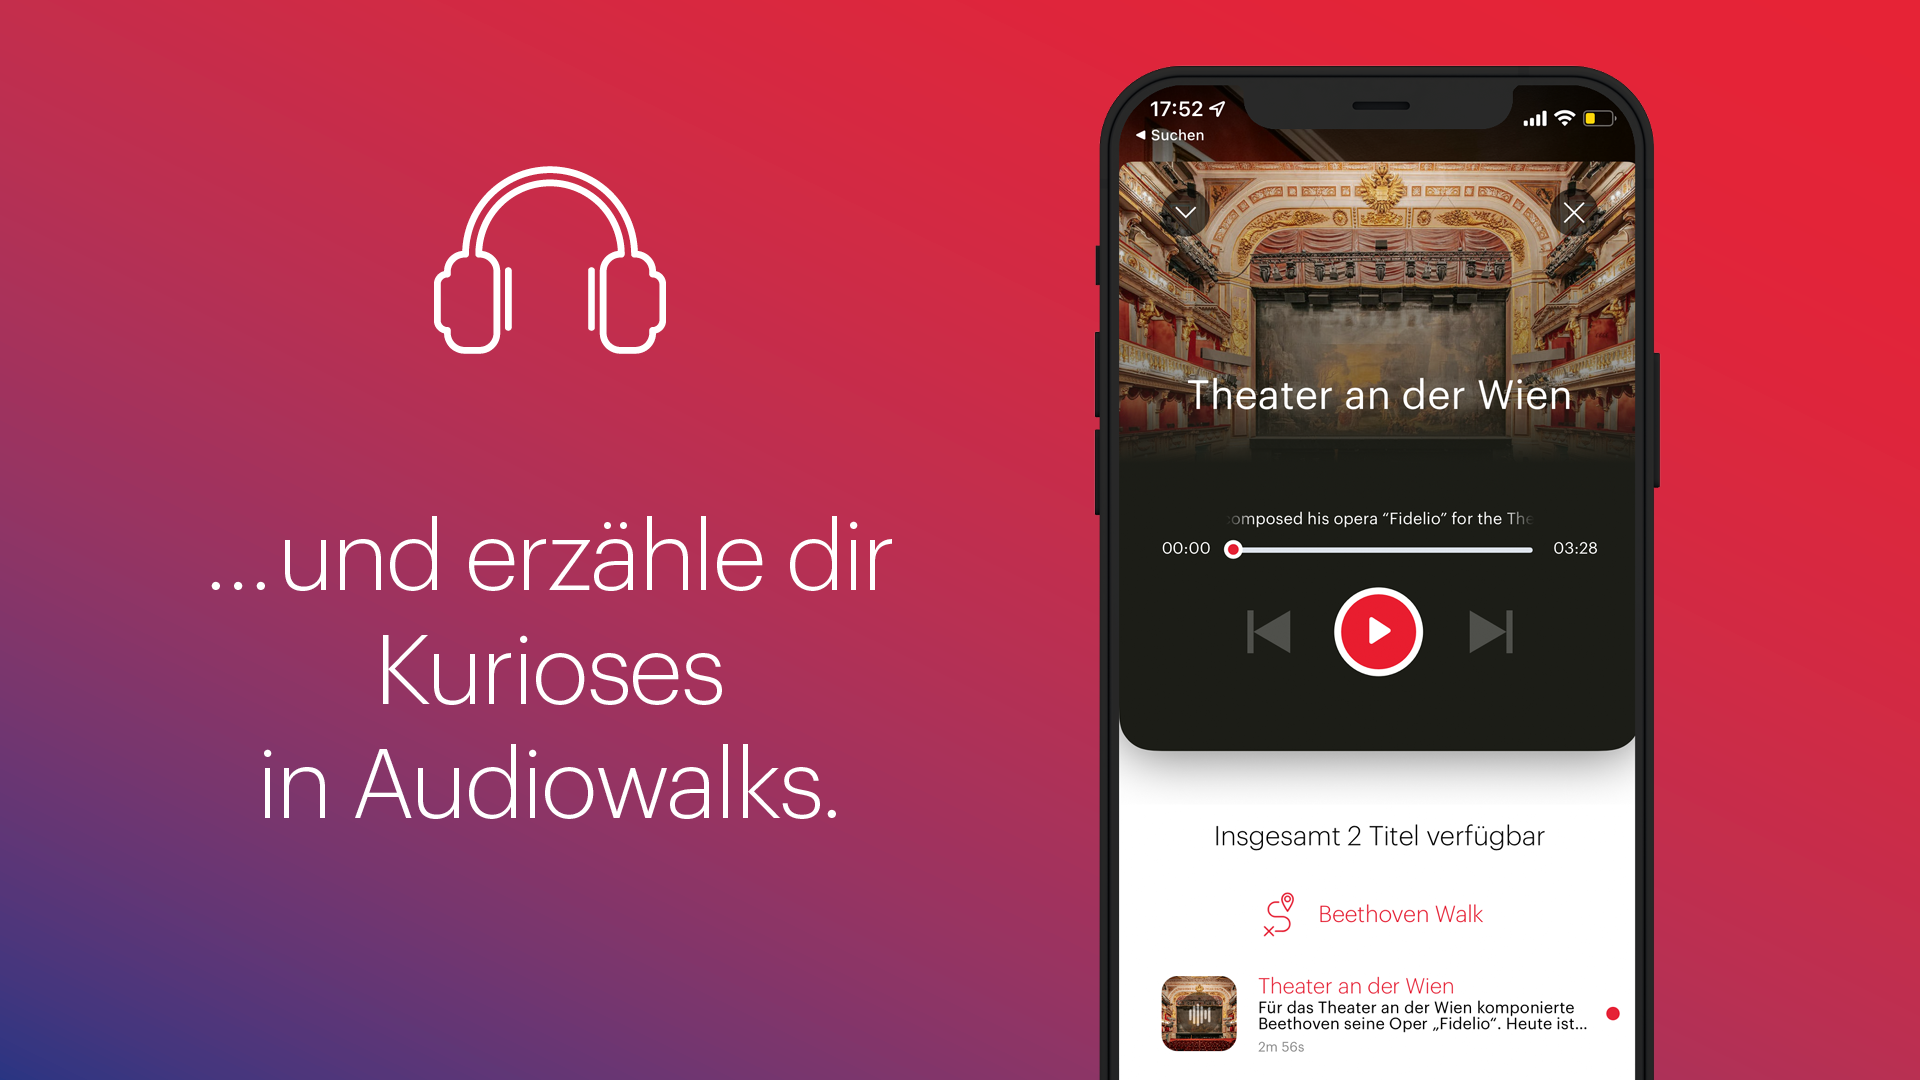 ivie App - Audiowalks 